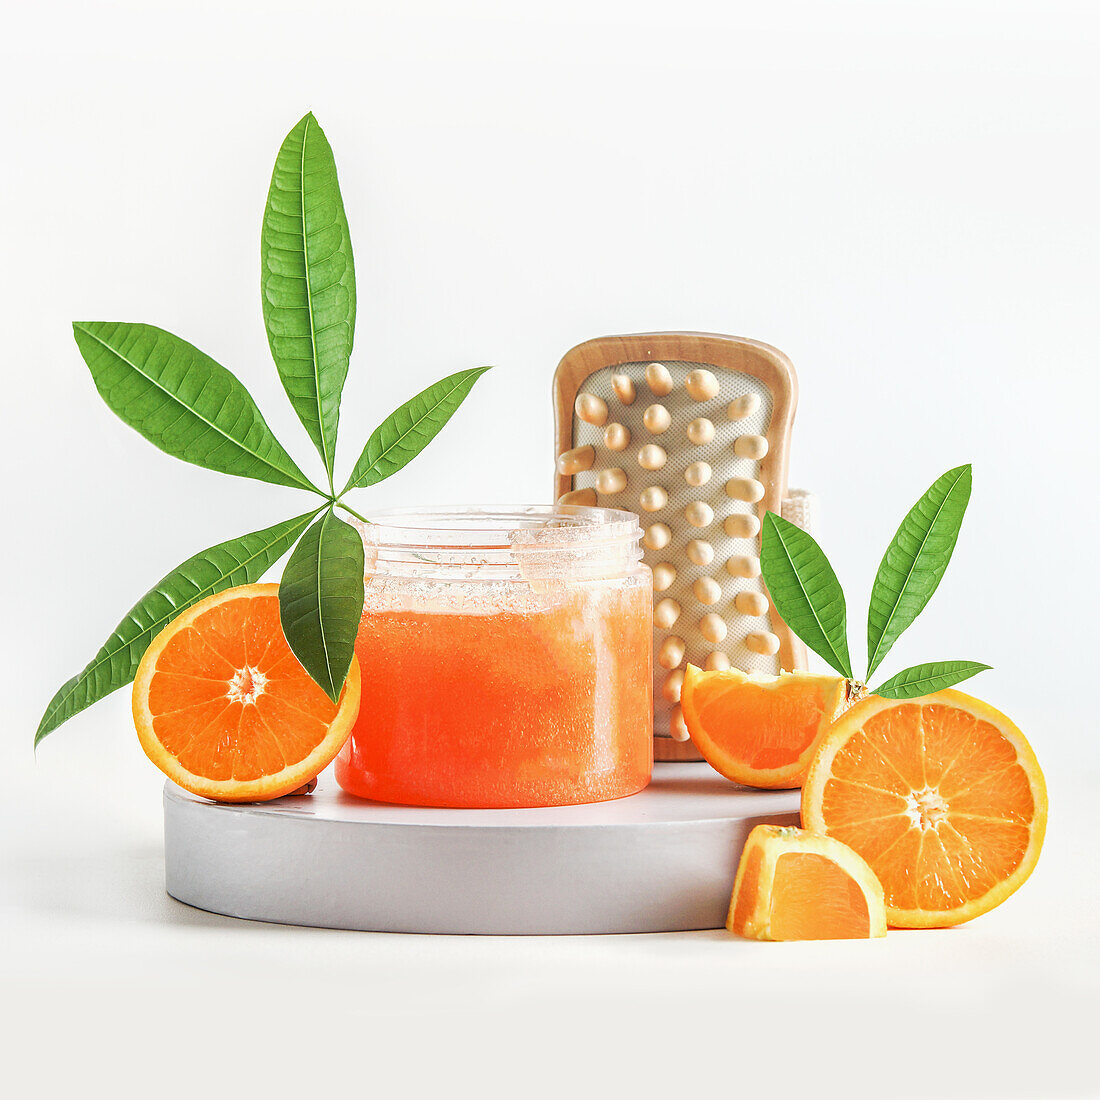 Spa-Setting mit Orangenzucker-Peeling im Glas mit tropischen grünen Blättern, Holzmassagebürste und Orangenfrüchten. Gesunde Hautpflege und Behandlung mit natürlichen Bade- und Wellnessprodukten. Frontansicht